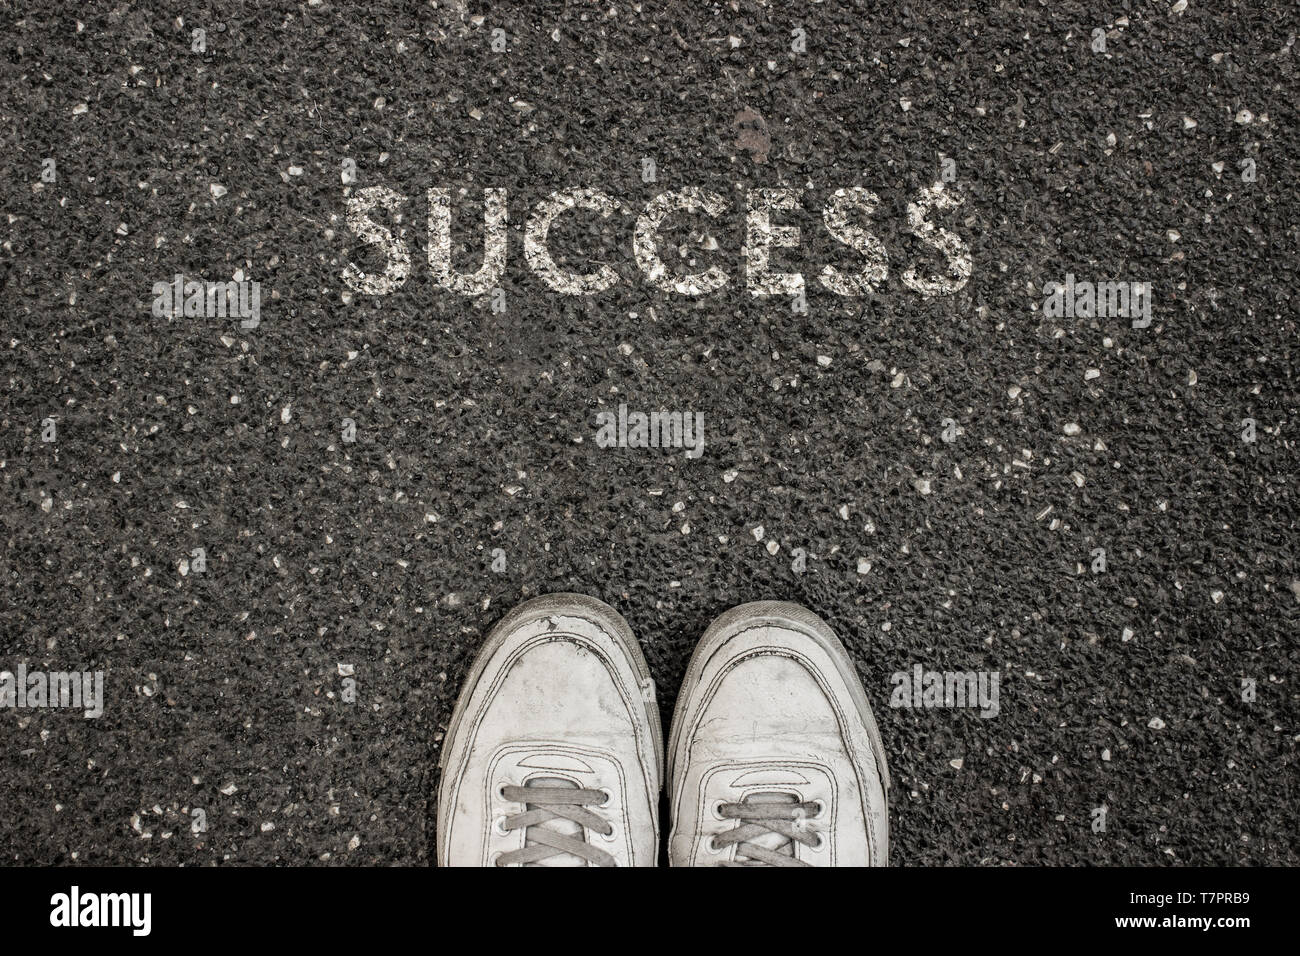 Nuevo concepto de vida, calzado deportivo y la palabra éxito escrito en asfalto, tierra, slogan de motivación. Foto de stock